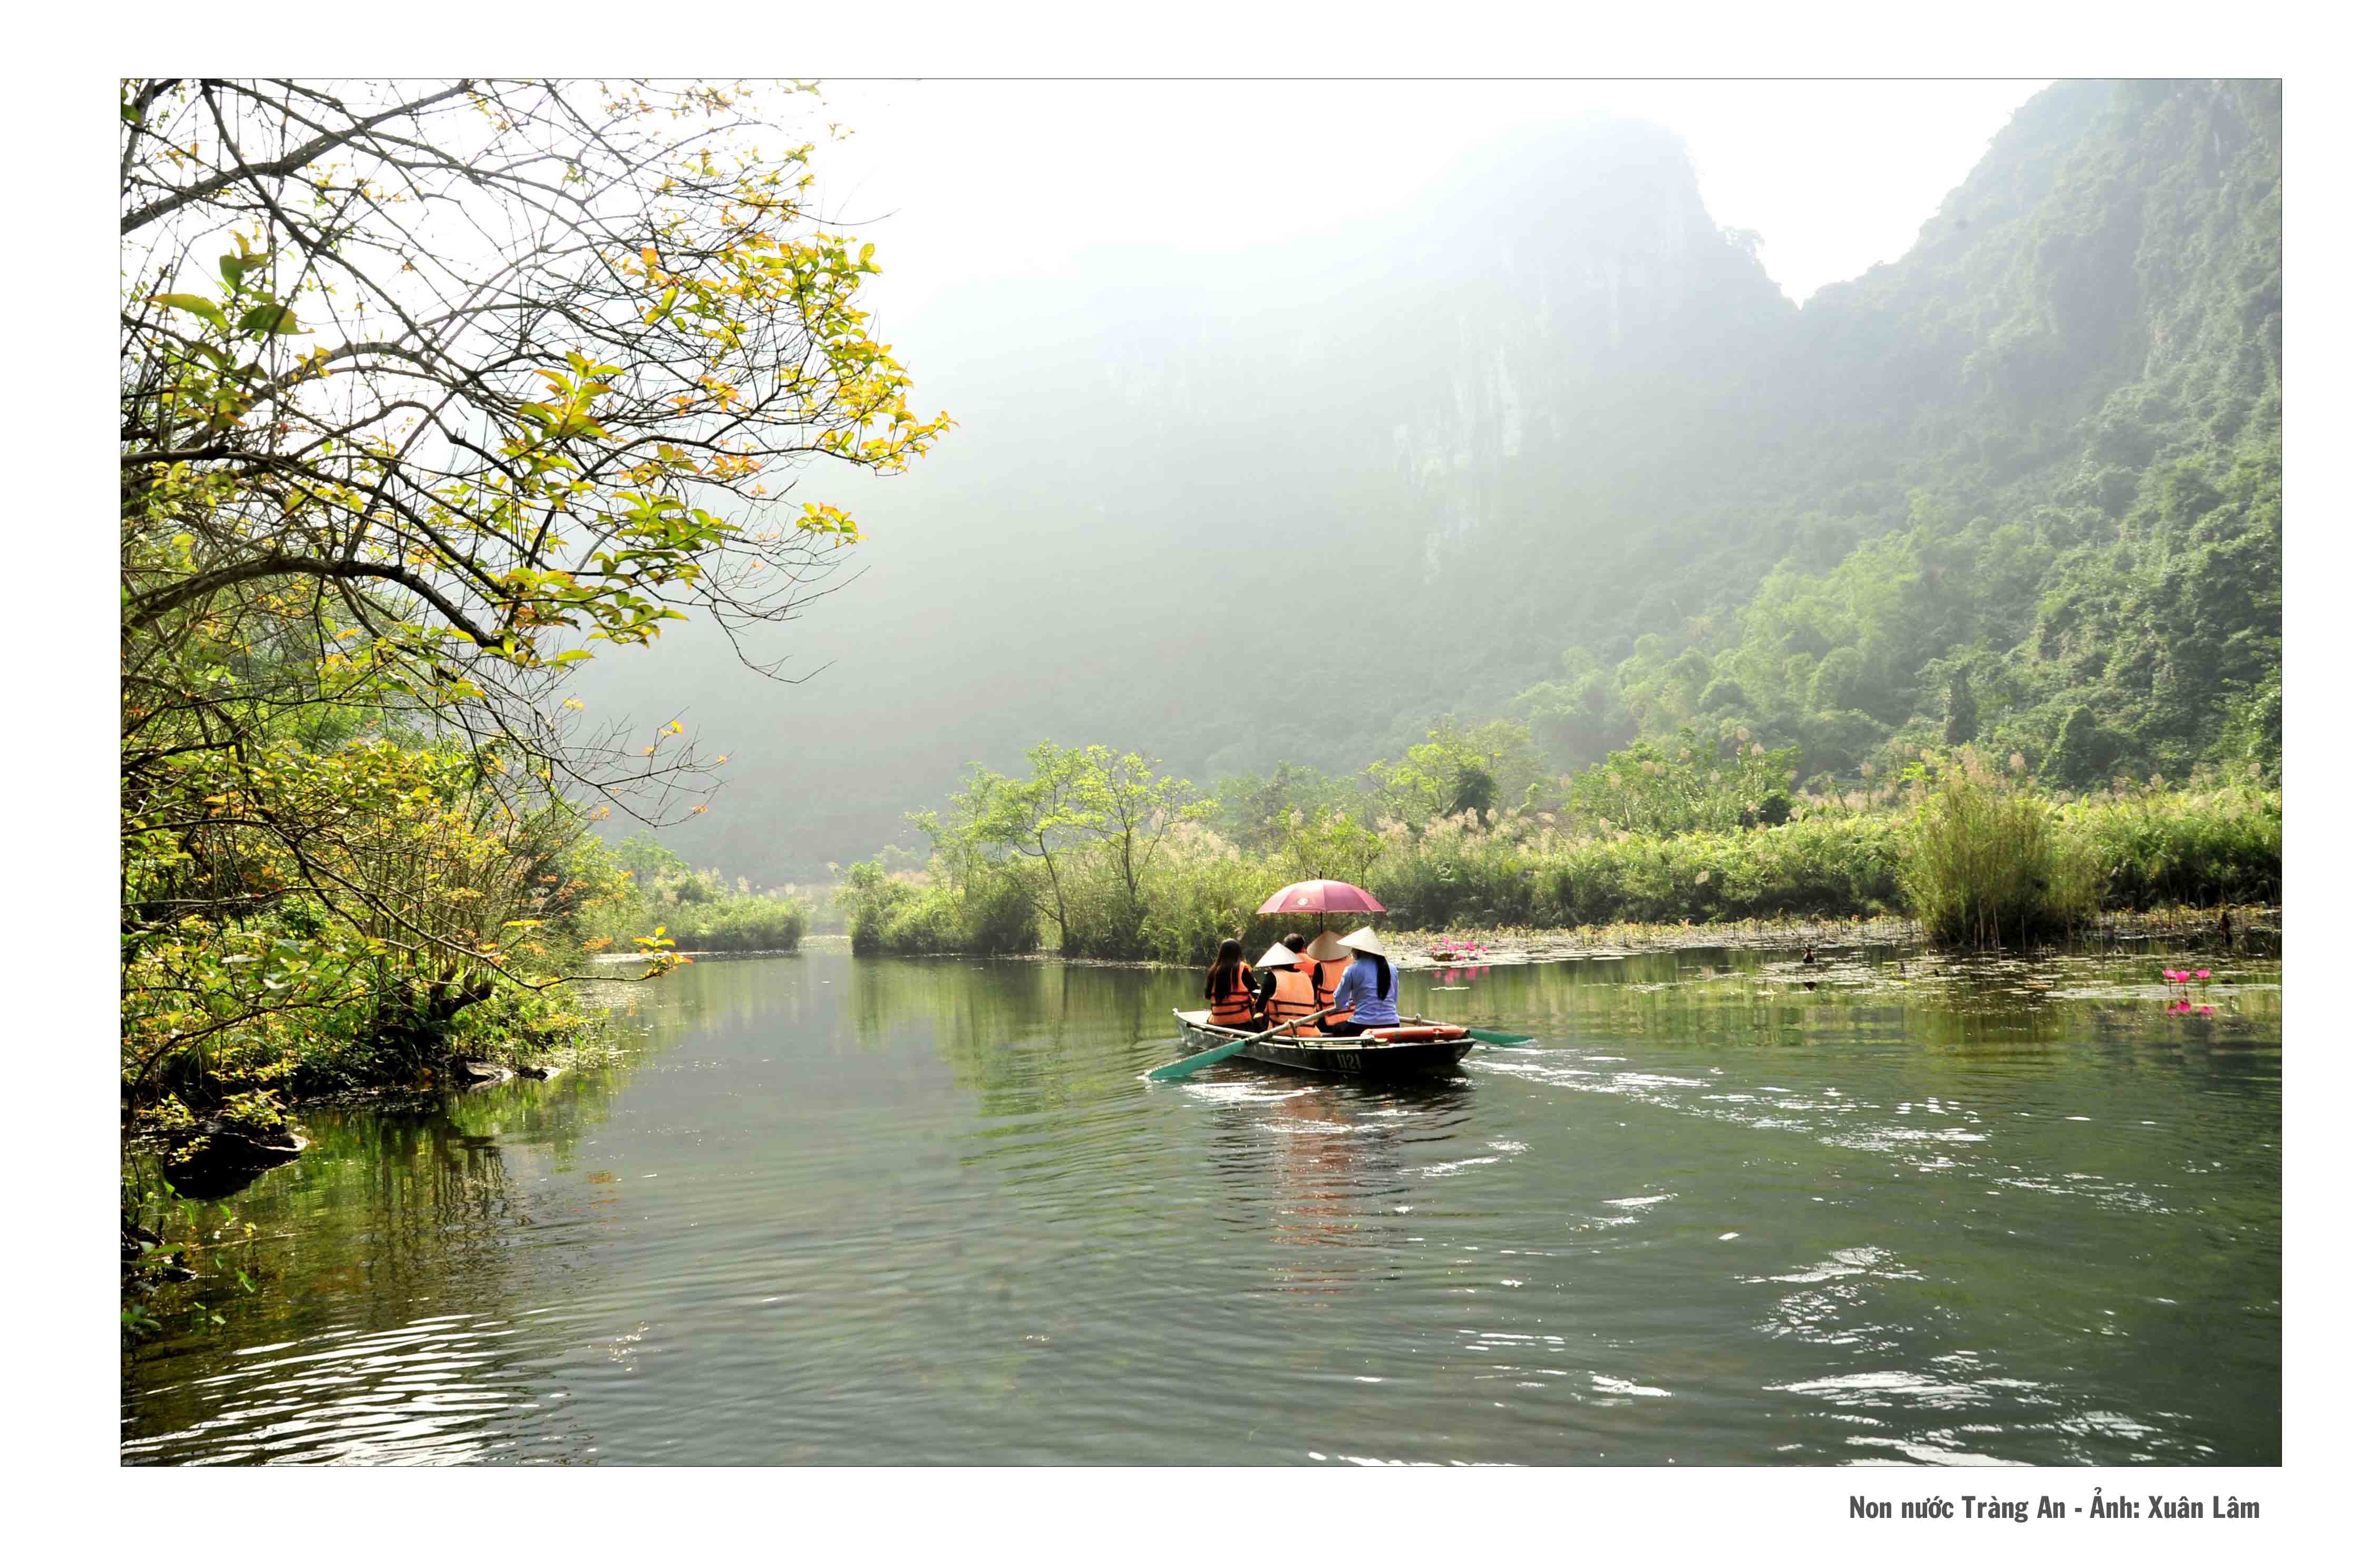 Tràng An - Di sản văn hóa và thiên nhiên thế giới - Du lịch Ninh Binh